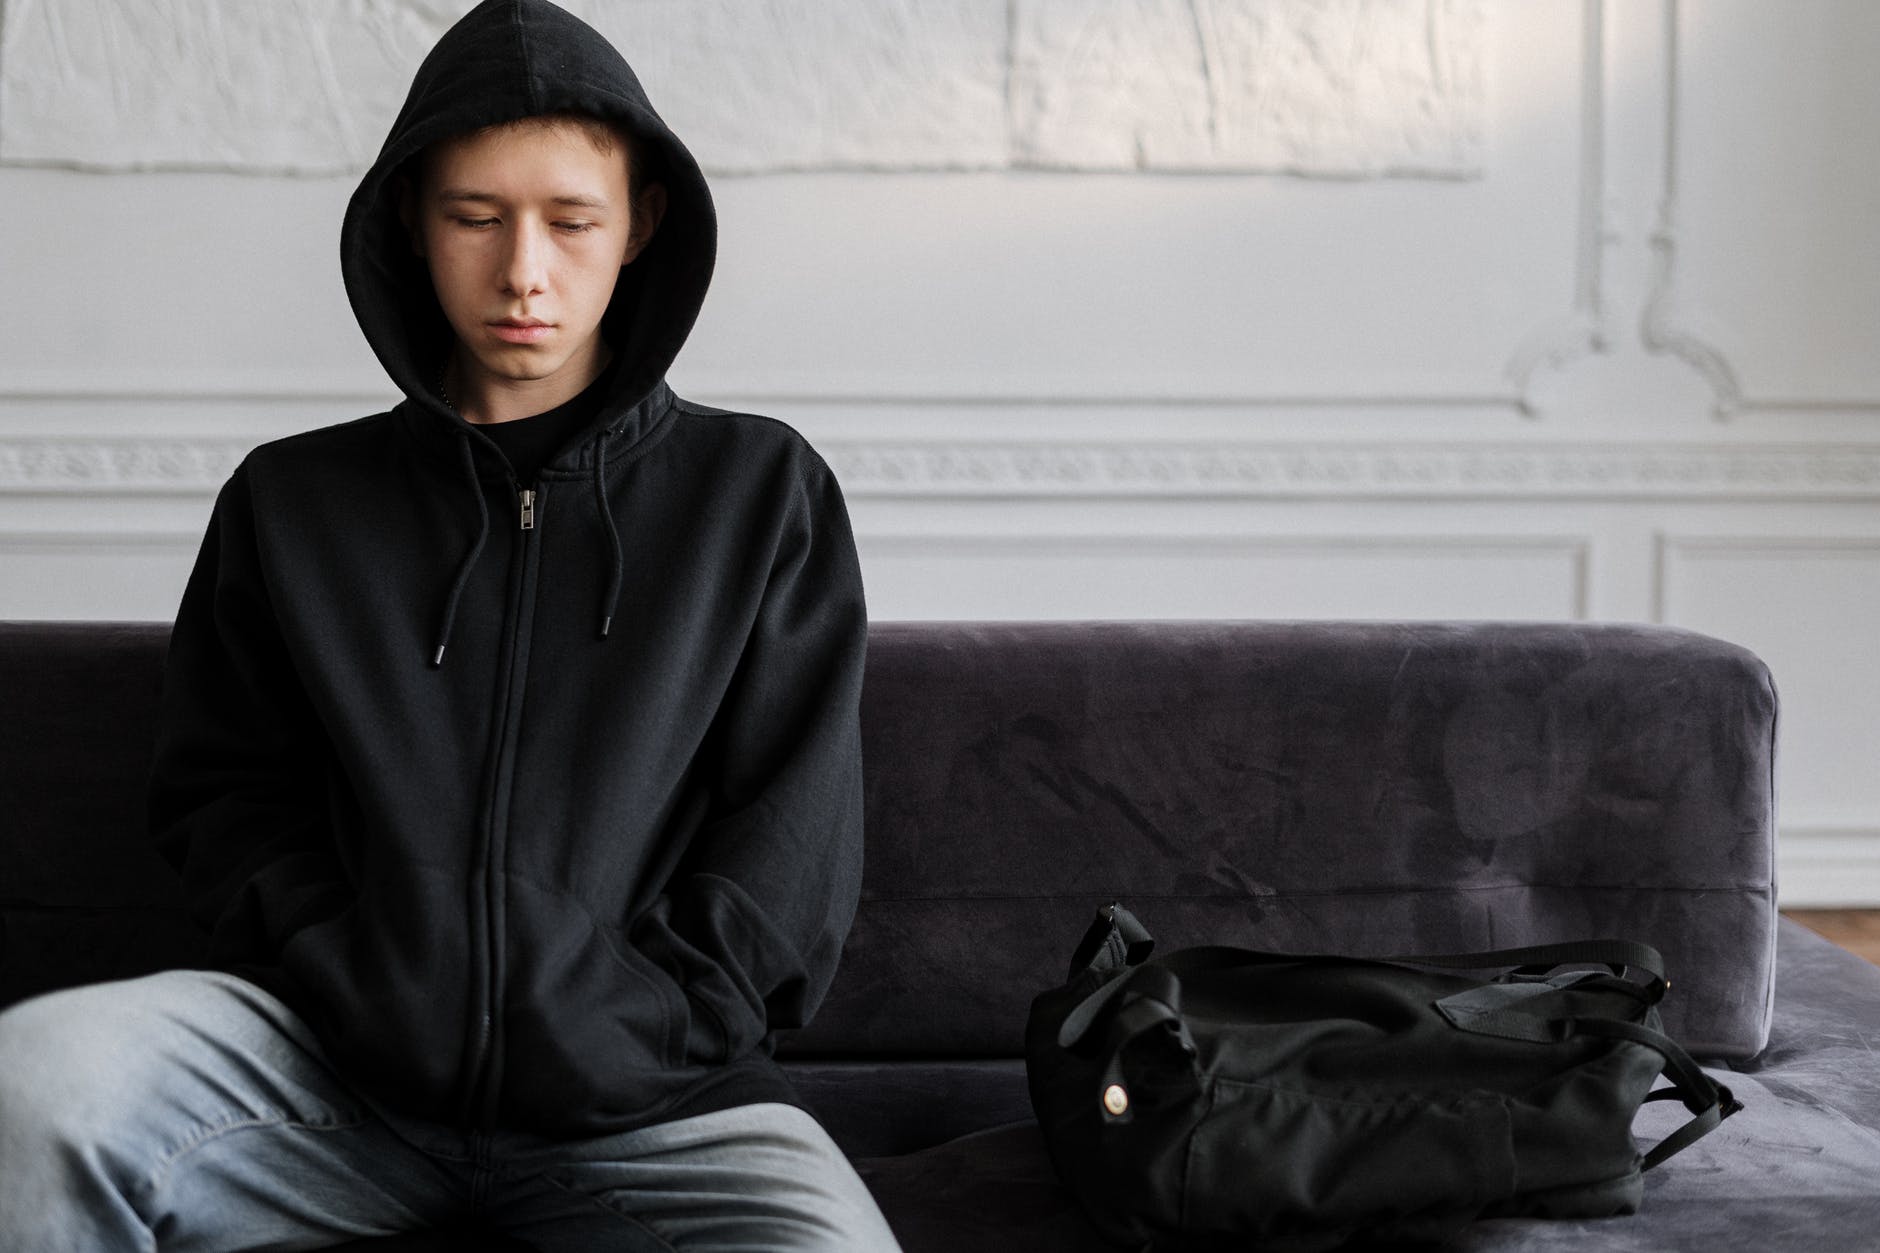 Boy sitting down wearing a hoodie | Source: Pexels